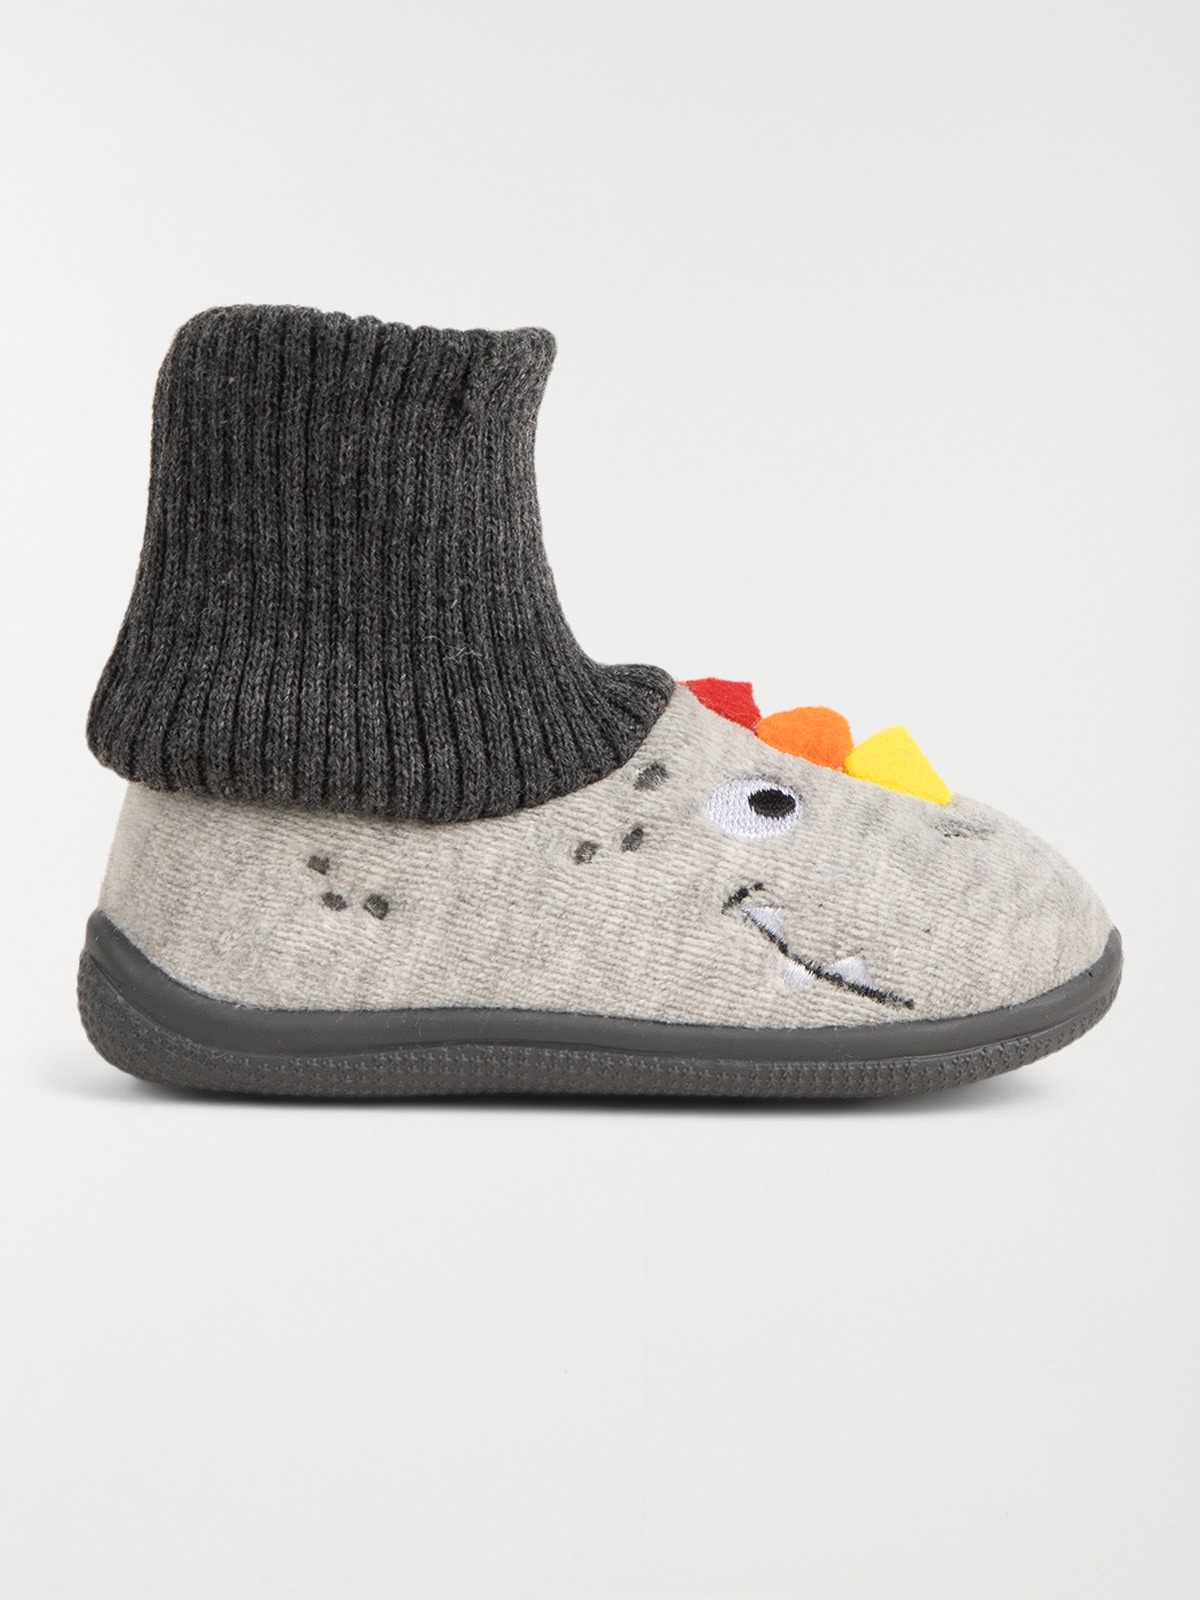 Chausson-chaussette bébé garçon : achat en ligne - Chaussons